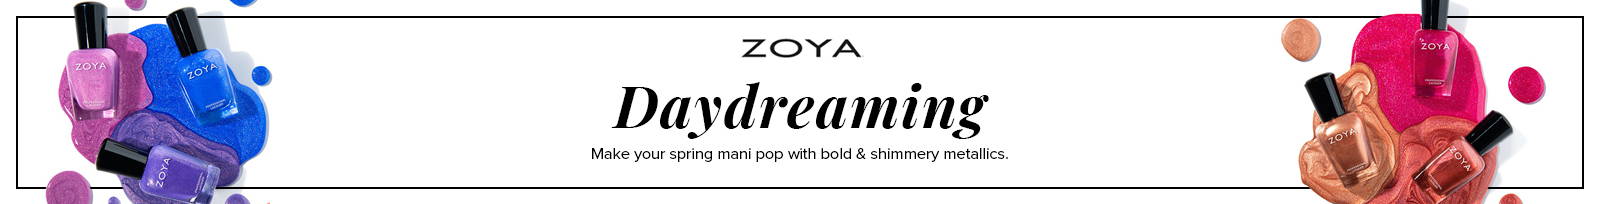 Zoya Daydreaming